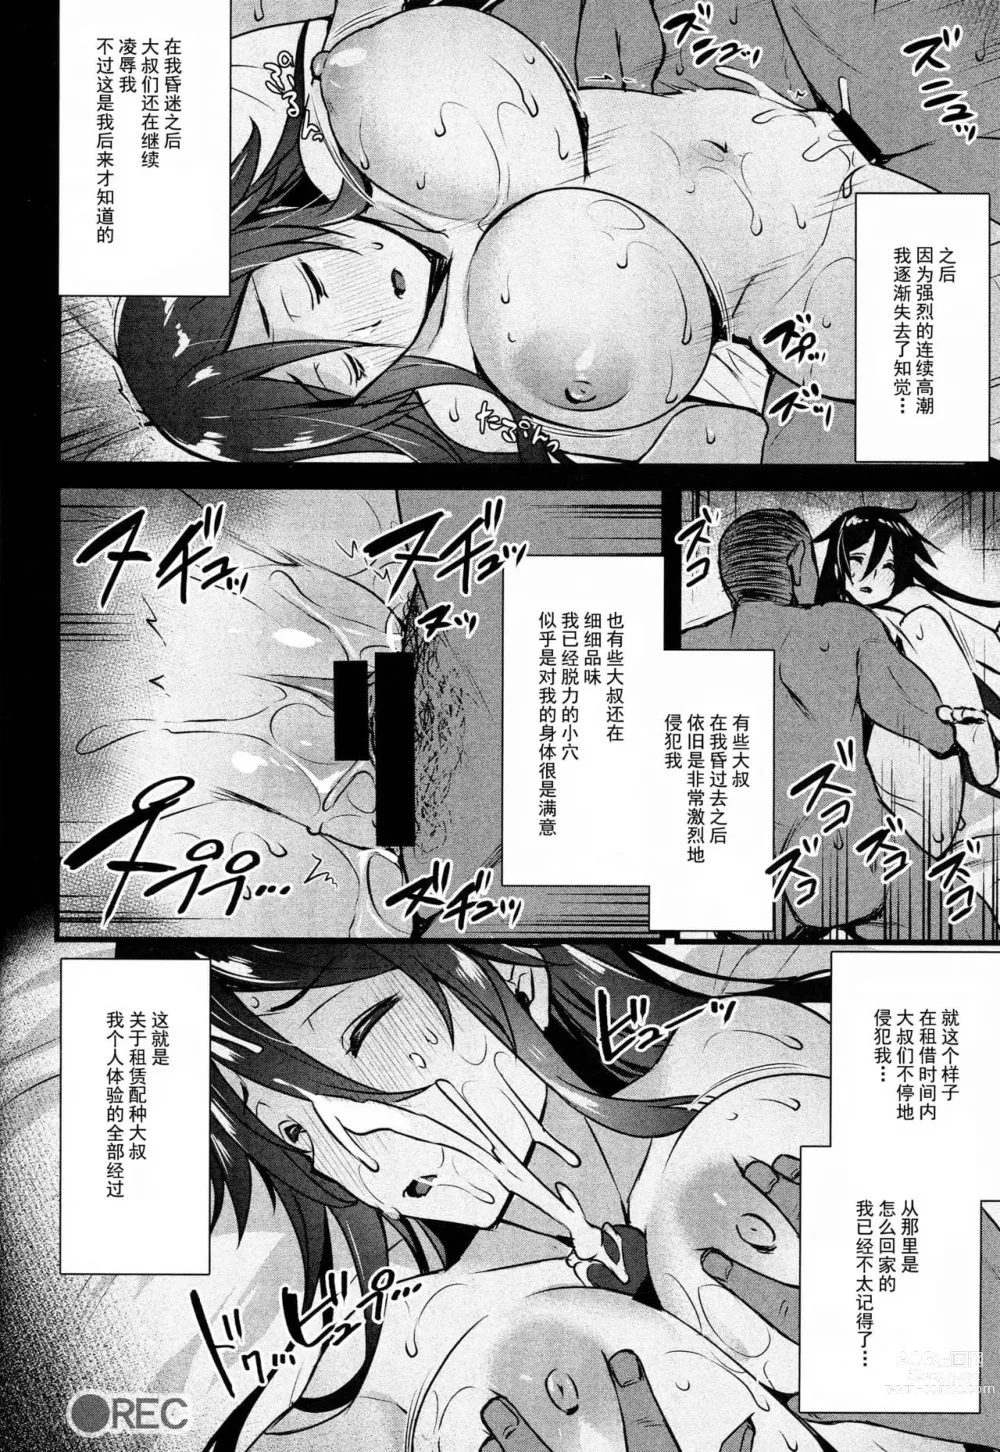 Page 21 of doujinshi abe inori collection